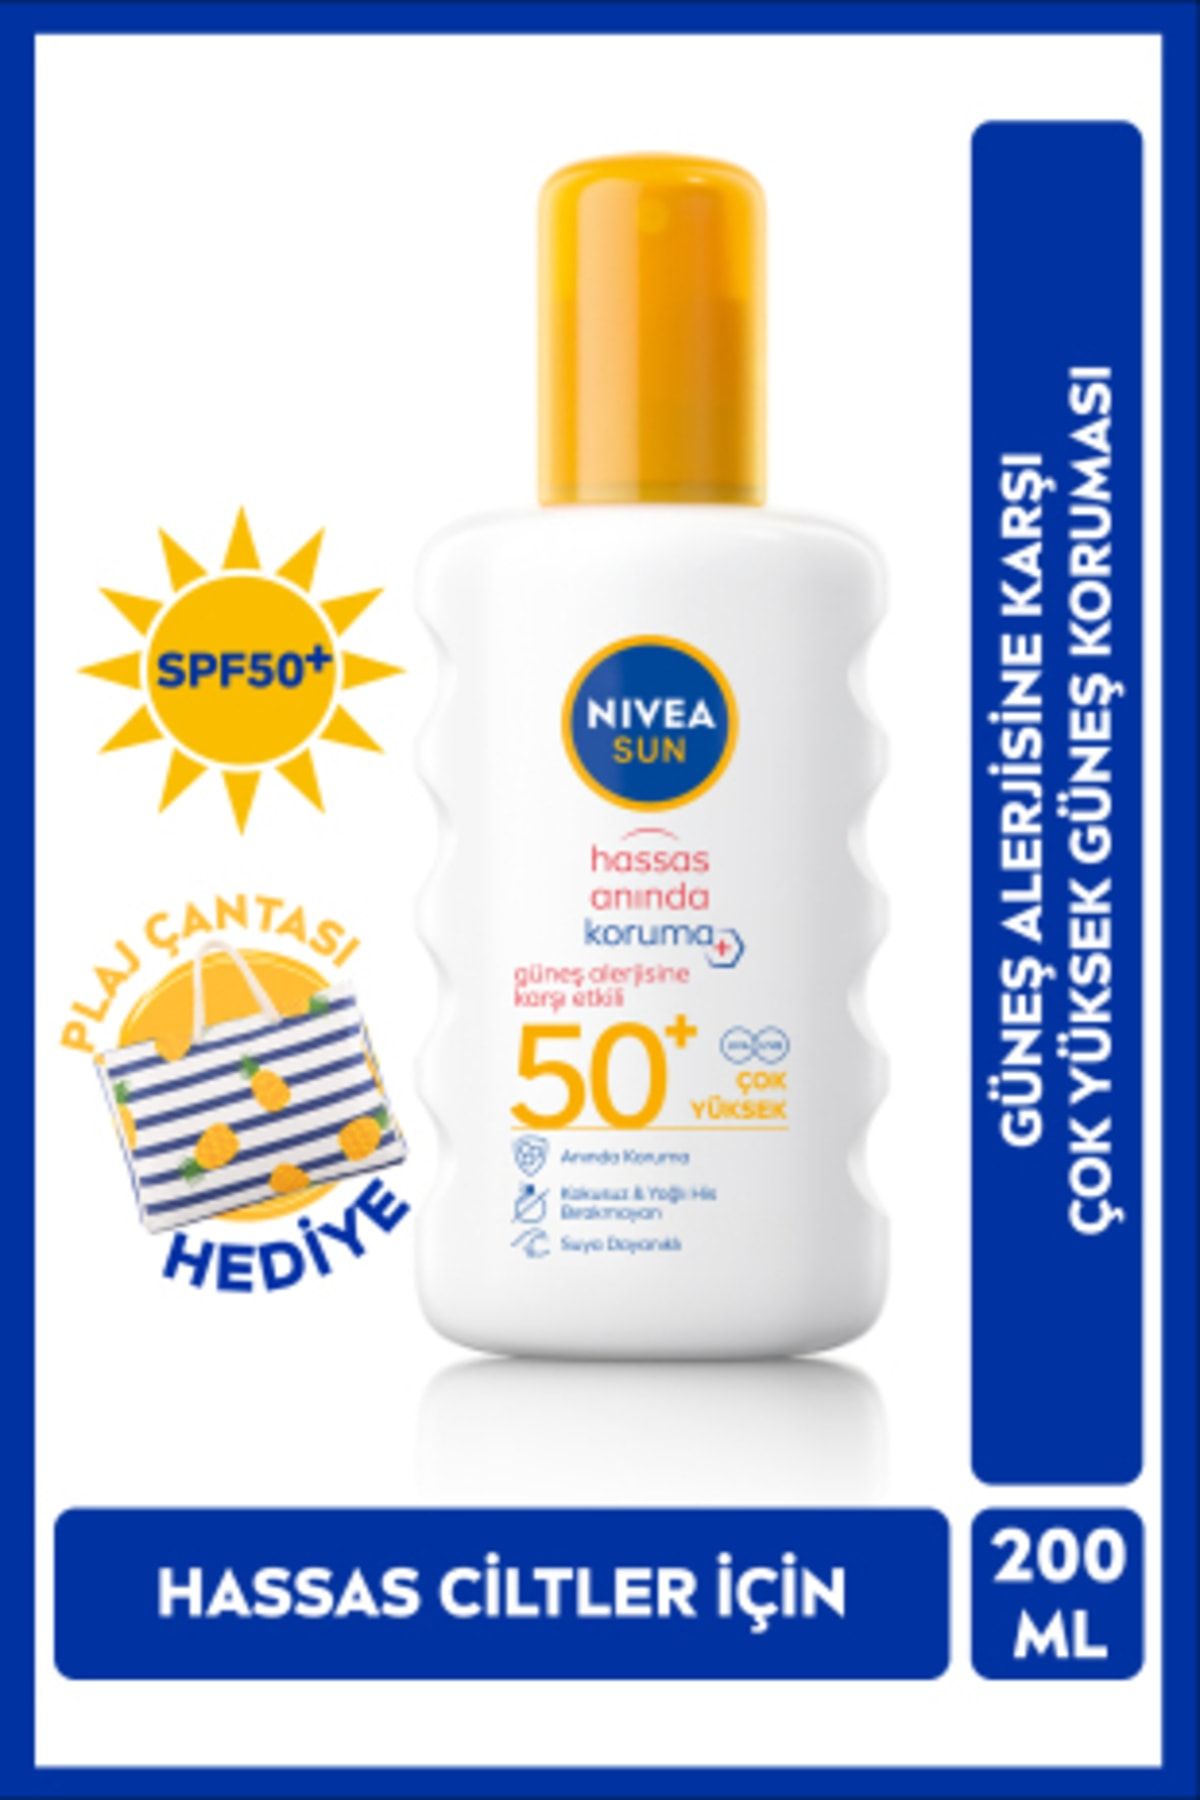 NIVEA کرم ضد آلرژی آفتاب SPF 50+ حساسیت از نور آفتاب محافظت از نور آفتاب 200 میلی لیتر اسپری، هدیه کیف ساحلی